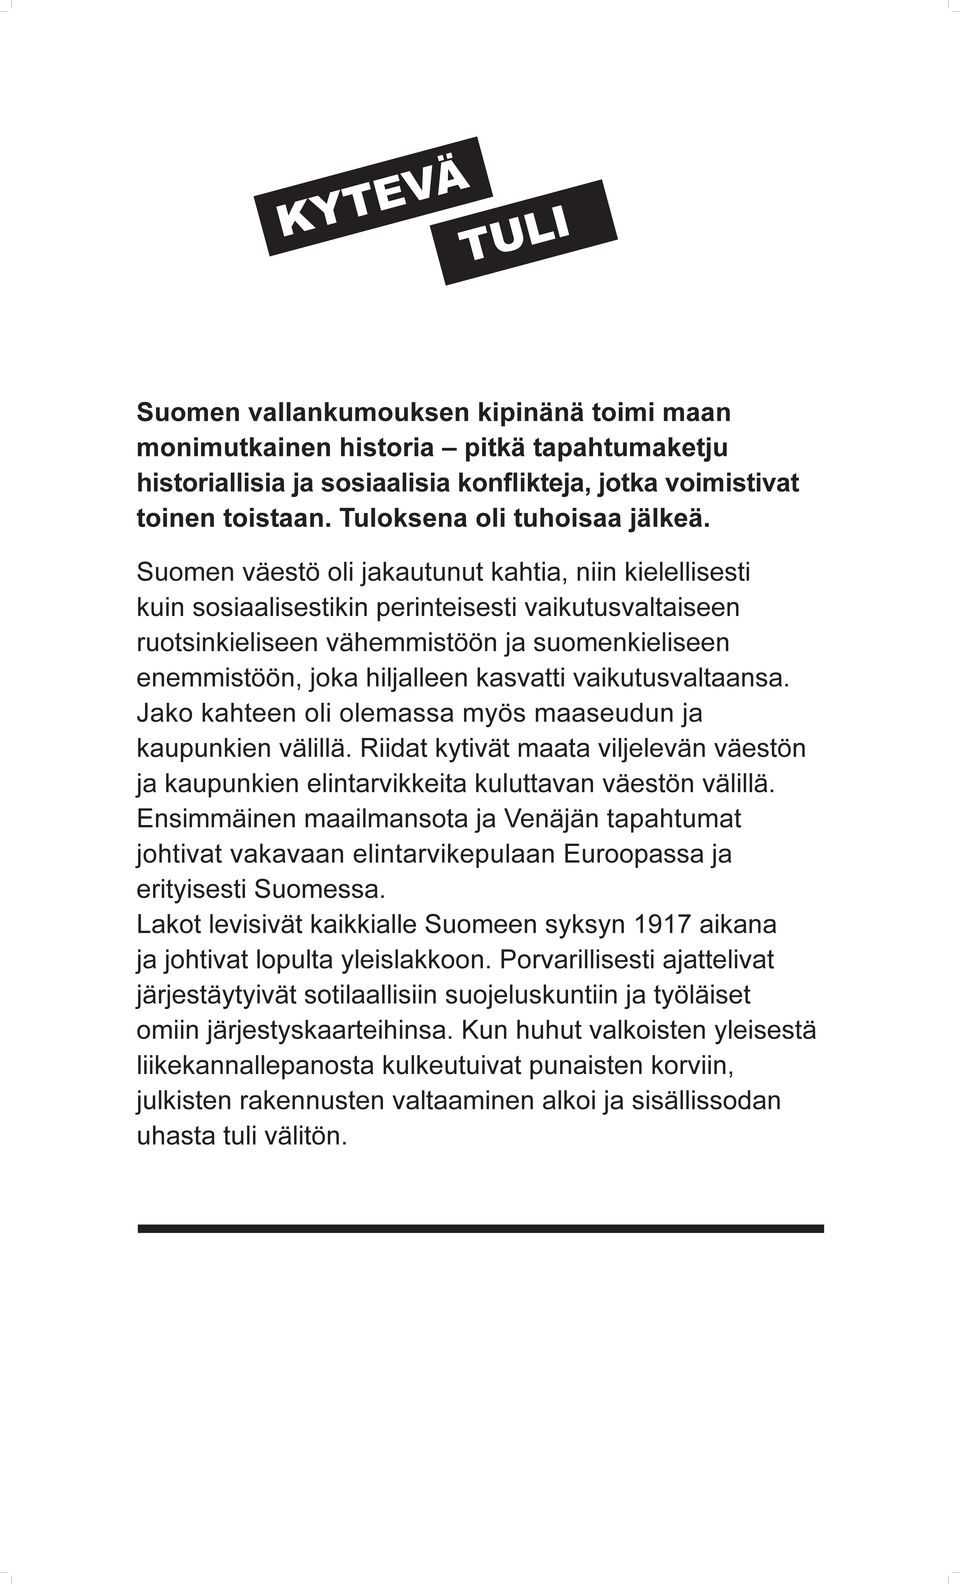 Suomen väestö oli jakautunut kahtia, niin kielellisesti kuin sosiaalisestikin perinteisesti vaikutusvaltaiseen ruotsinkieliseen vähemmistöön ja suomenkieliseen enemmistöön, joka hiljalleen kasvatti